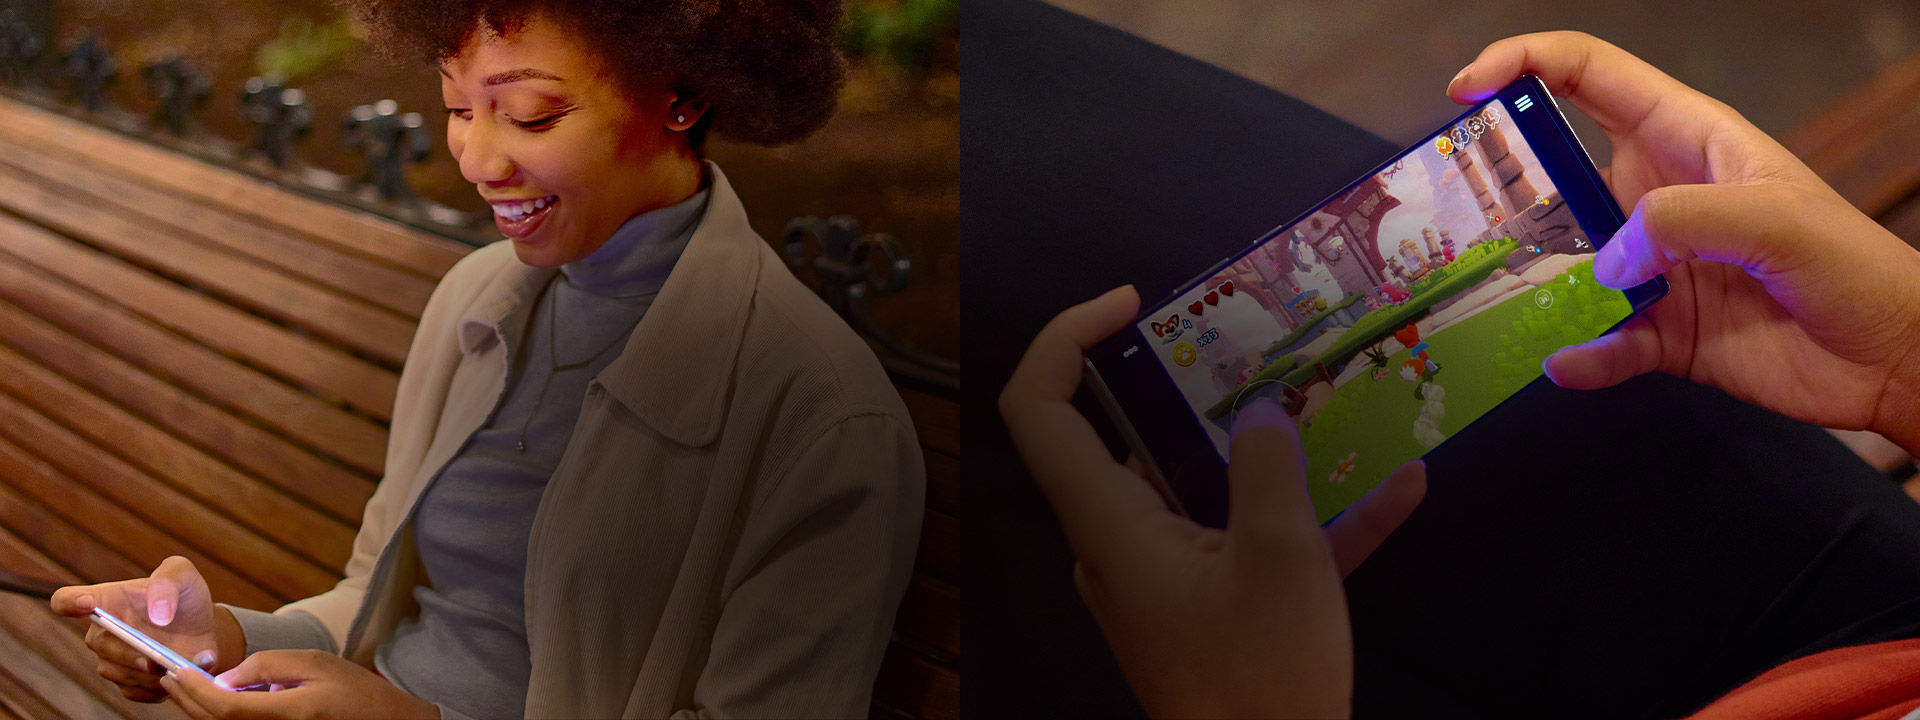 Žena na lavičce hraje hru Super Lucky's Tale na svém telefonu pomocí dotykového ovládání